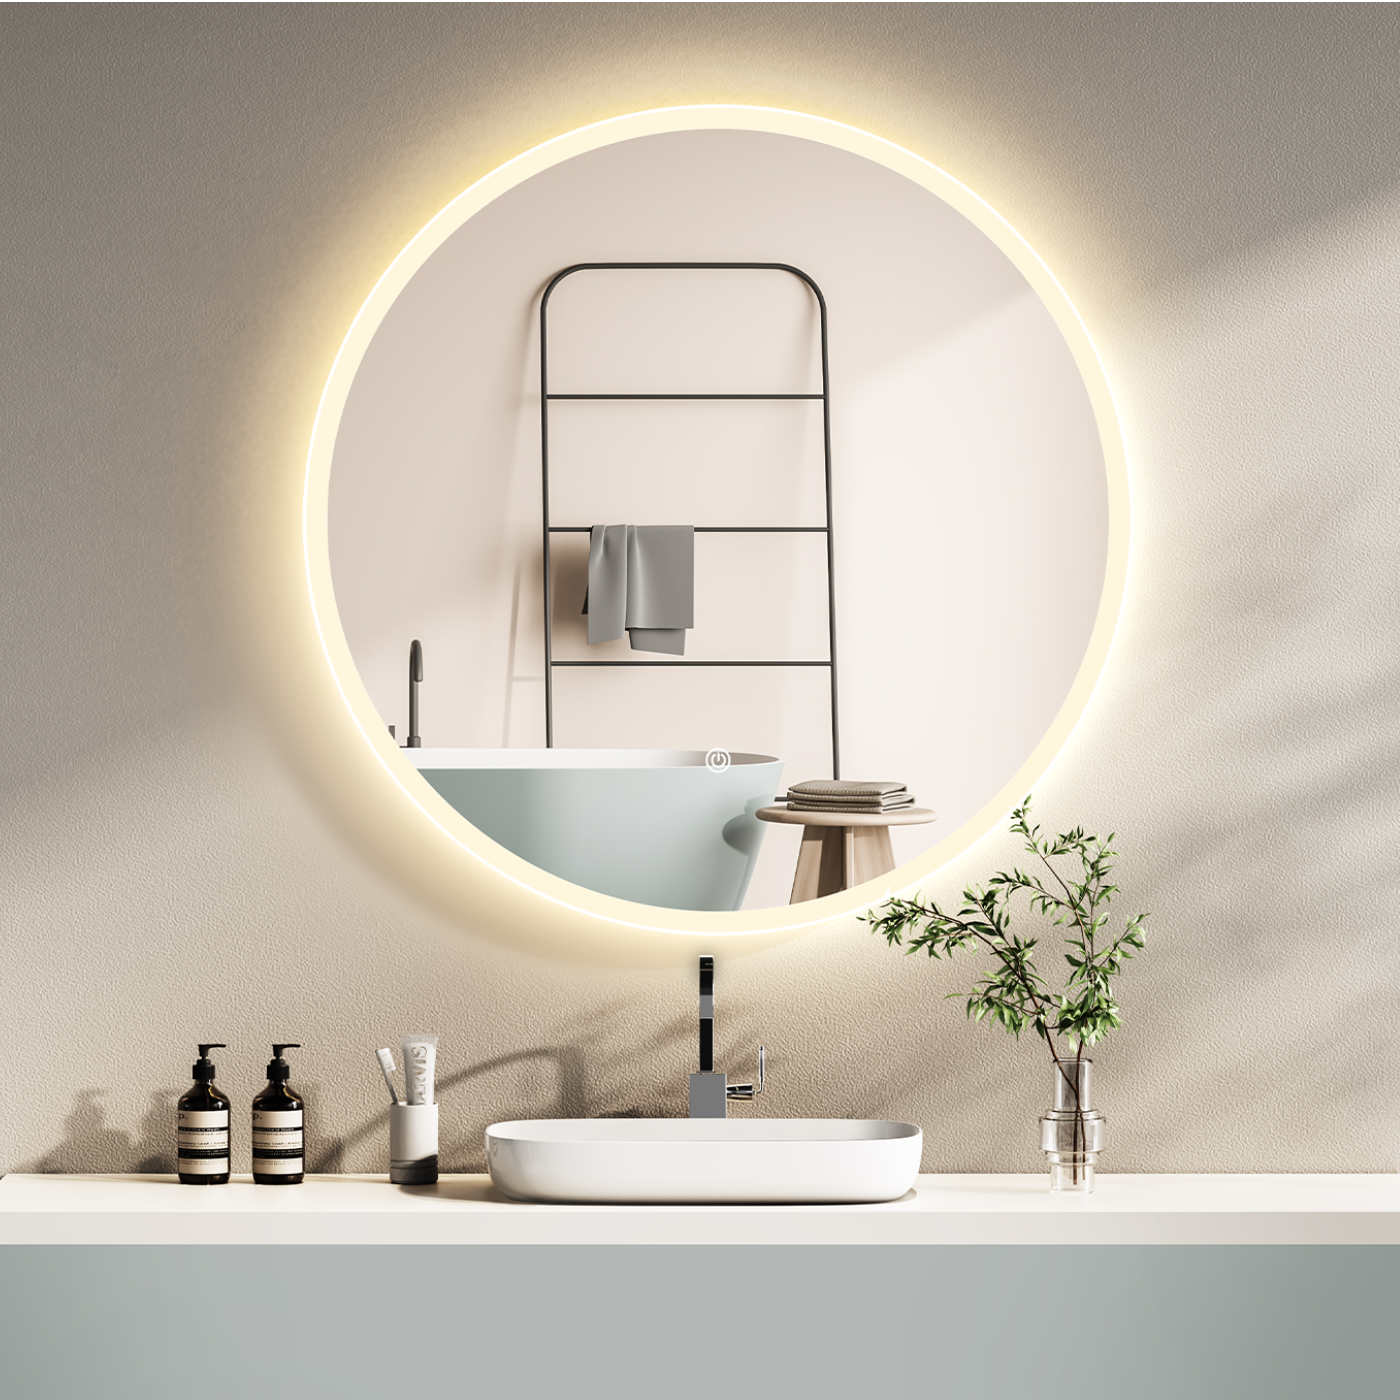 LED Badspiegel, design runder Badspiegel, Badspiegel mit led Beleuchtung, Lichtwechsel